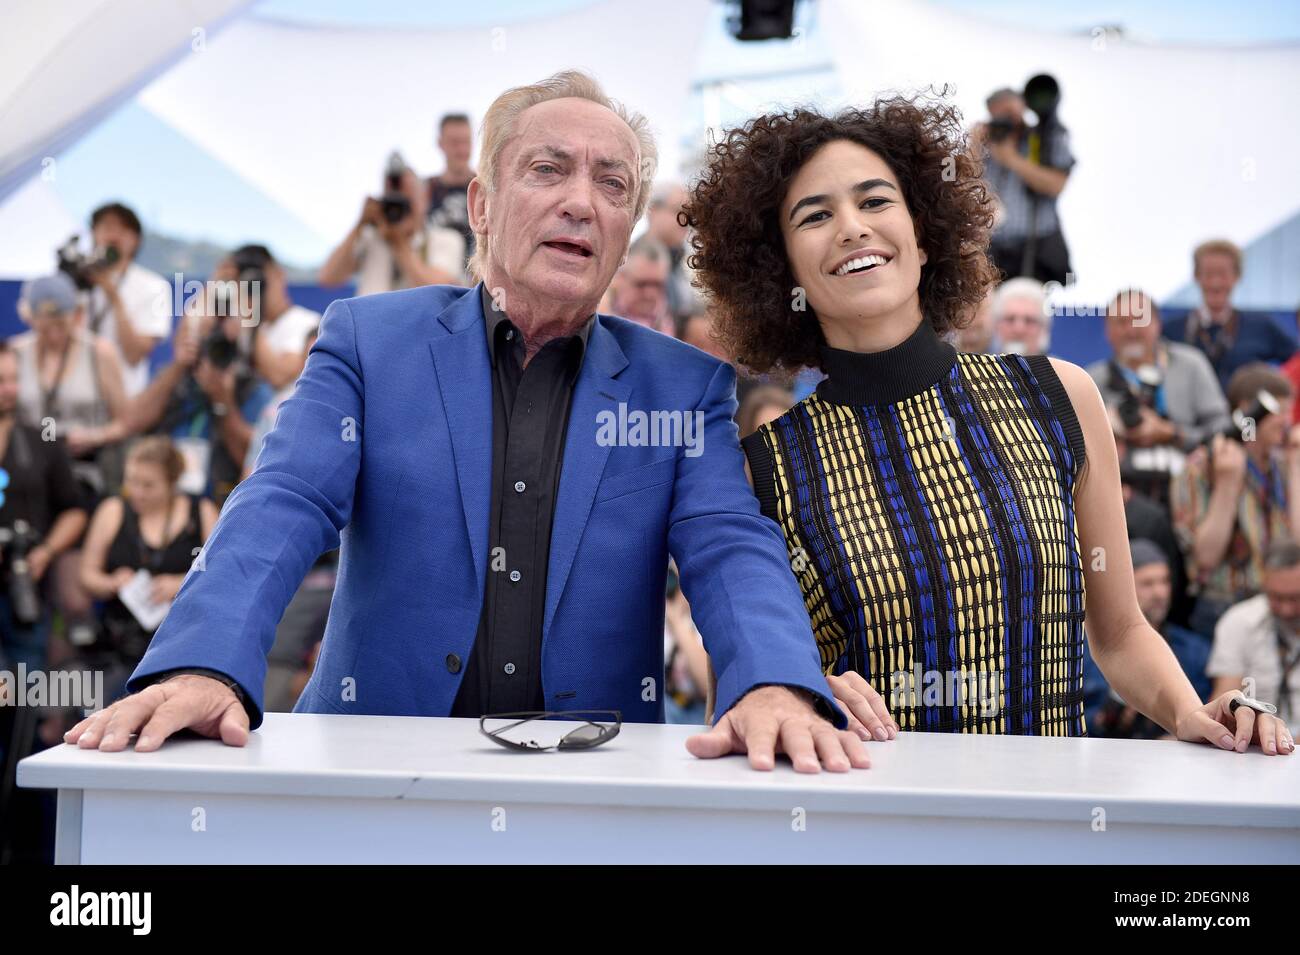 Barbara Colen e Udo Kier partecipano alla fotocellula per 'Bacurau' durante il 72o Festival annuale del Cinema di Cannes il 16 maggio 2019 a Cannes, Francia. Foto di Lionel Hahn/ABACAPRESS.COM Foto Stock